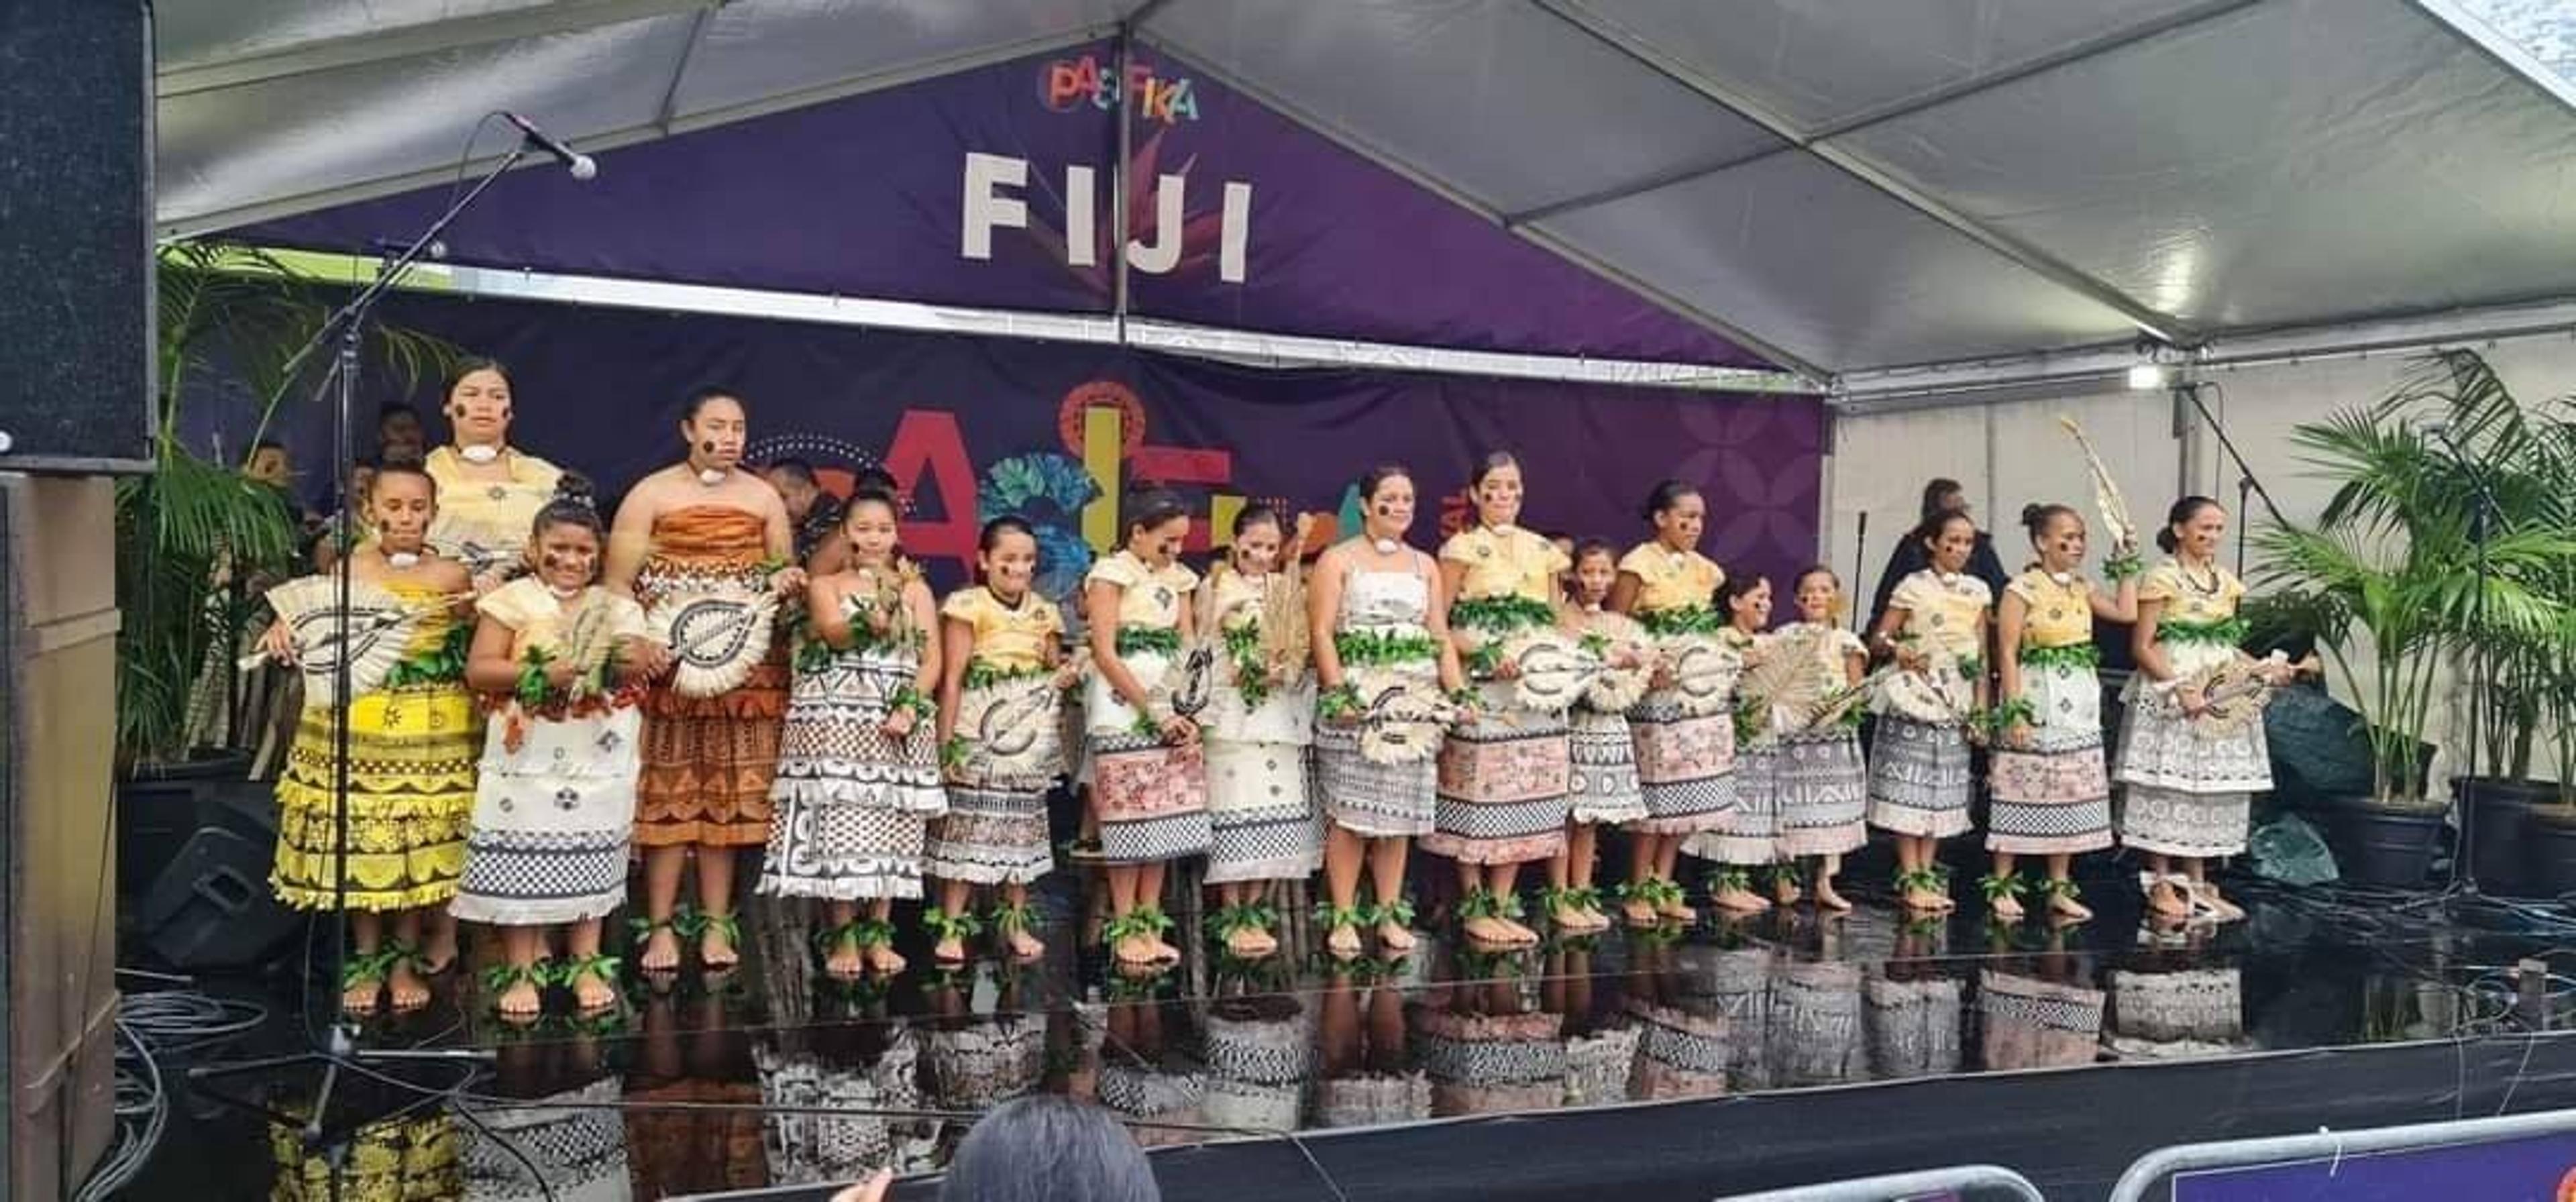 Fiji pride is on display this week.